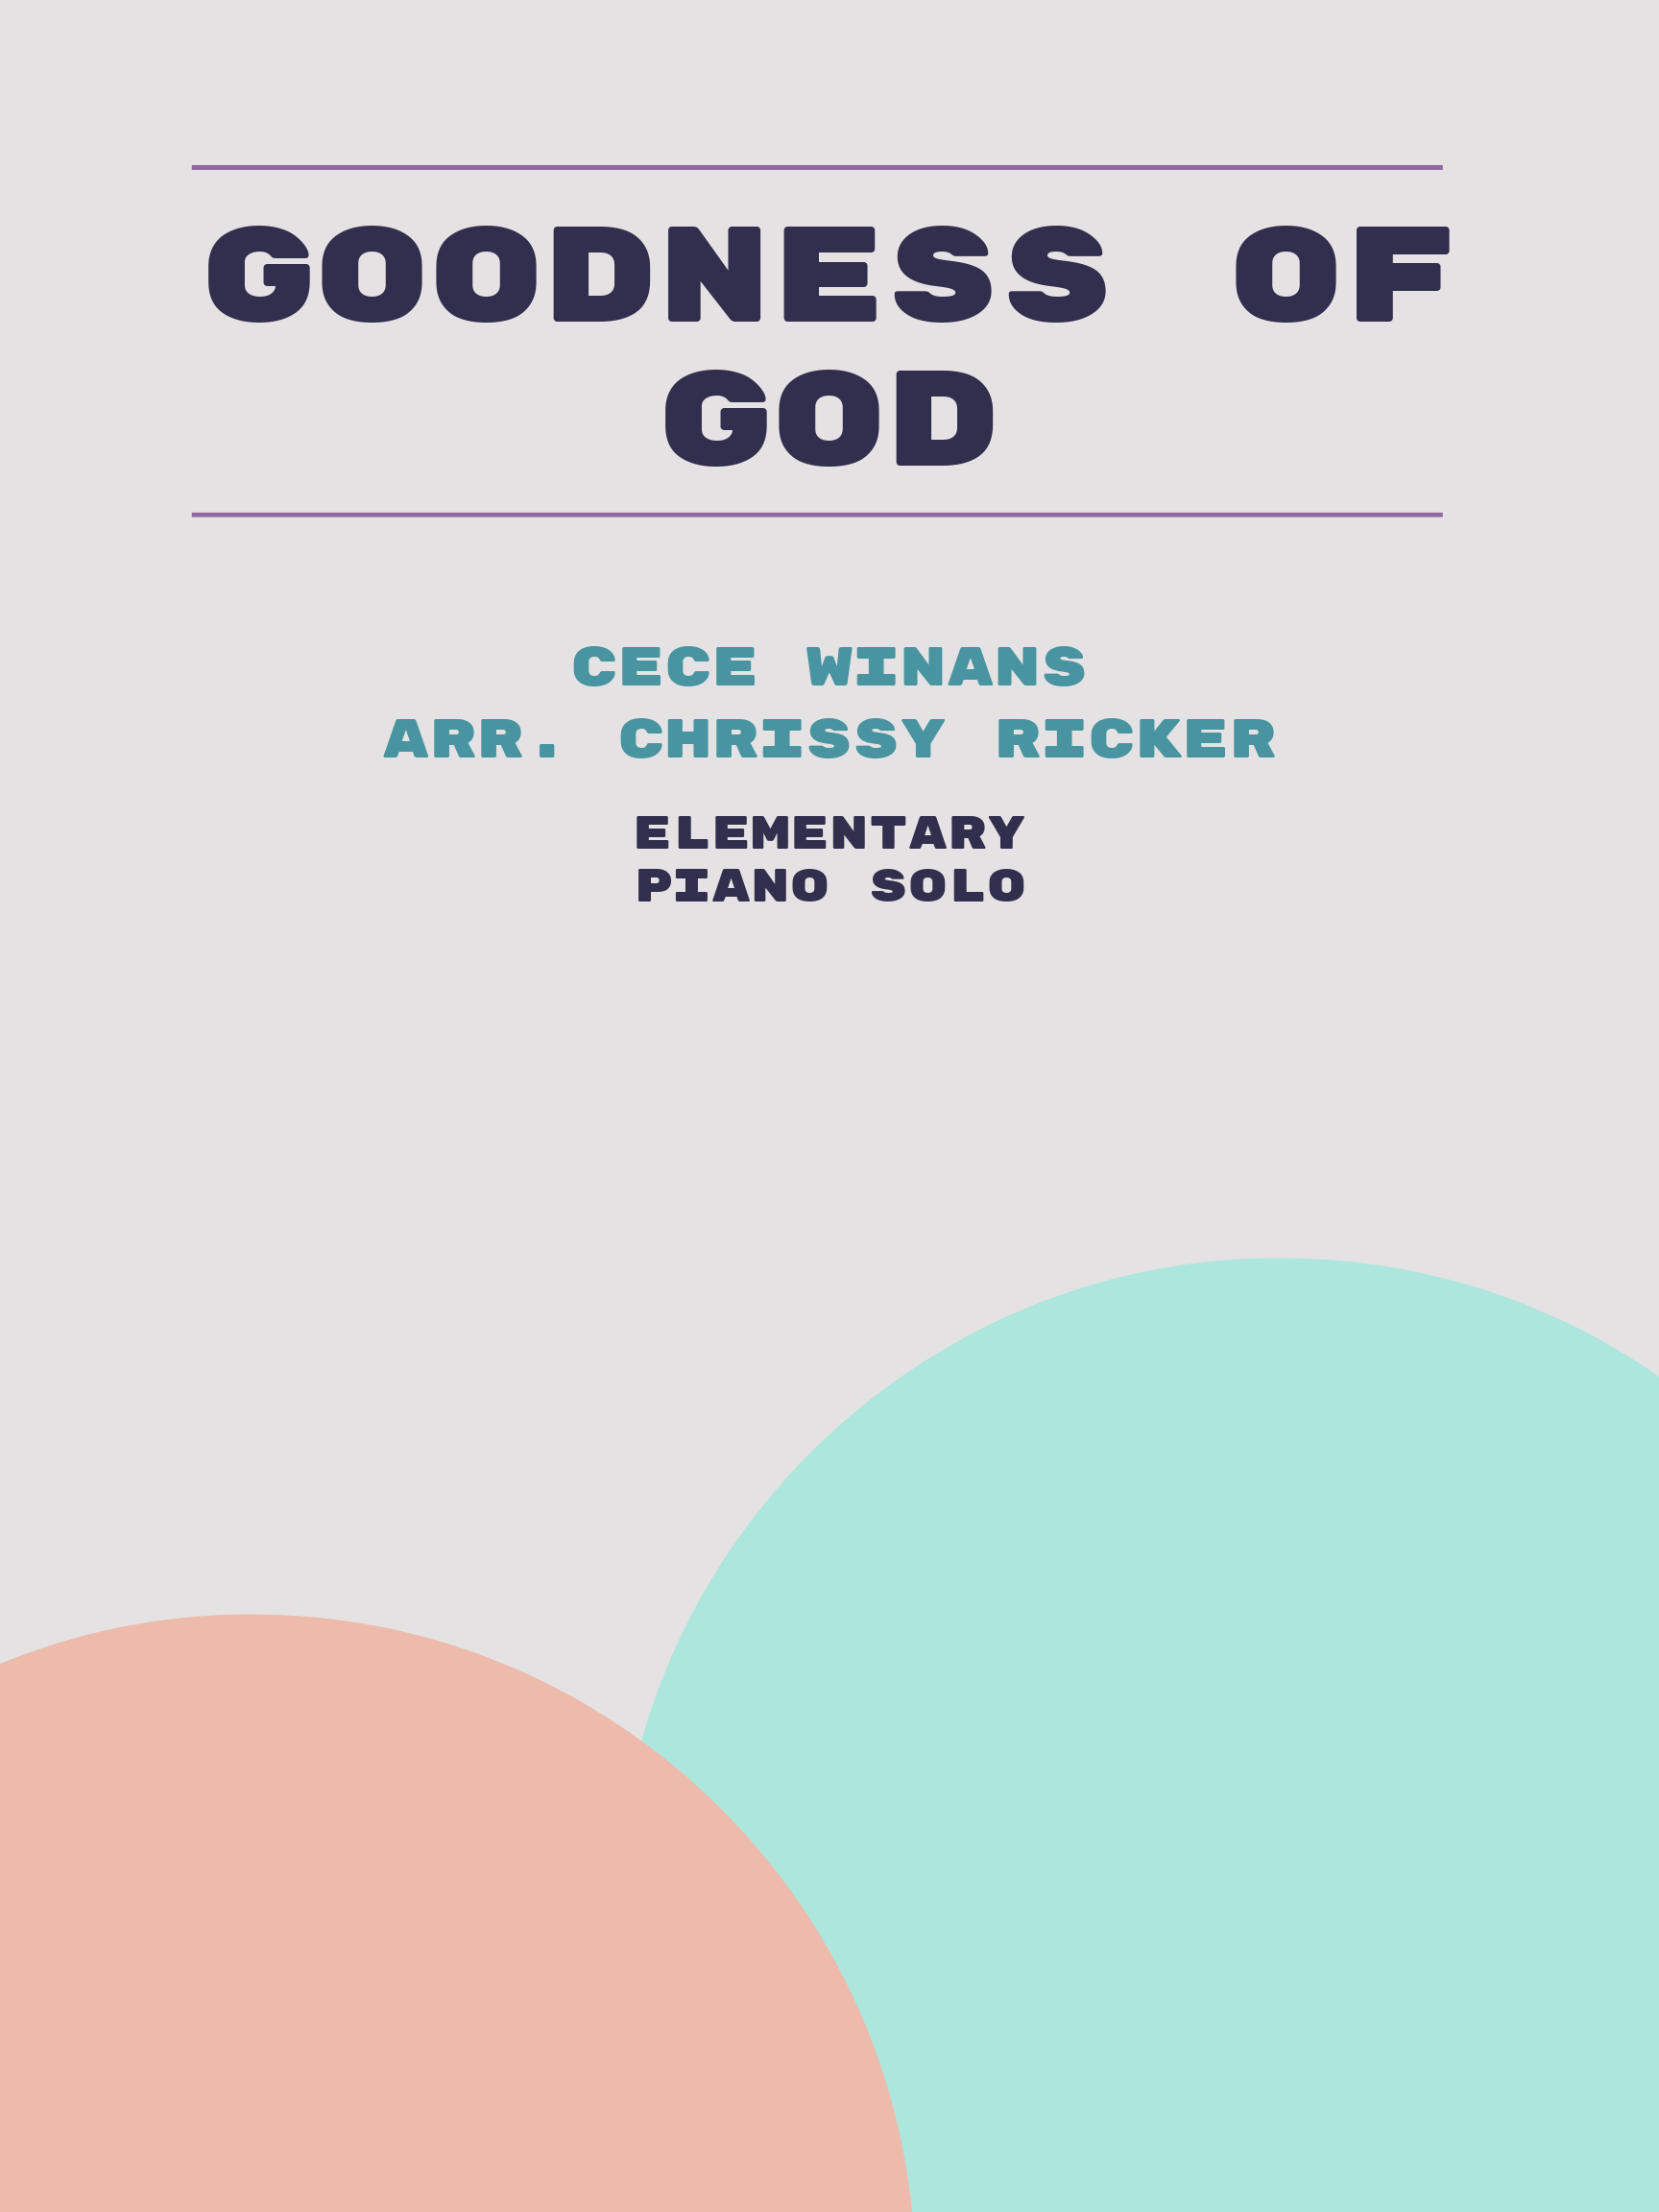 Goodness of God by CeCe Winans